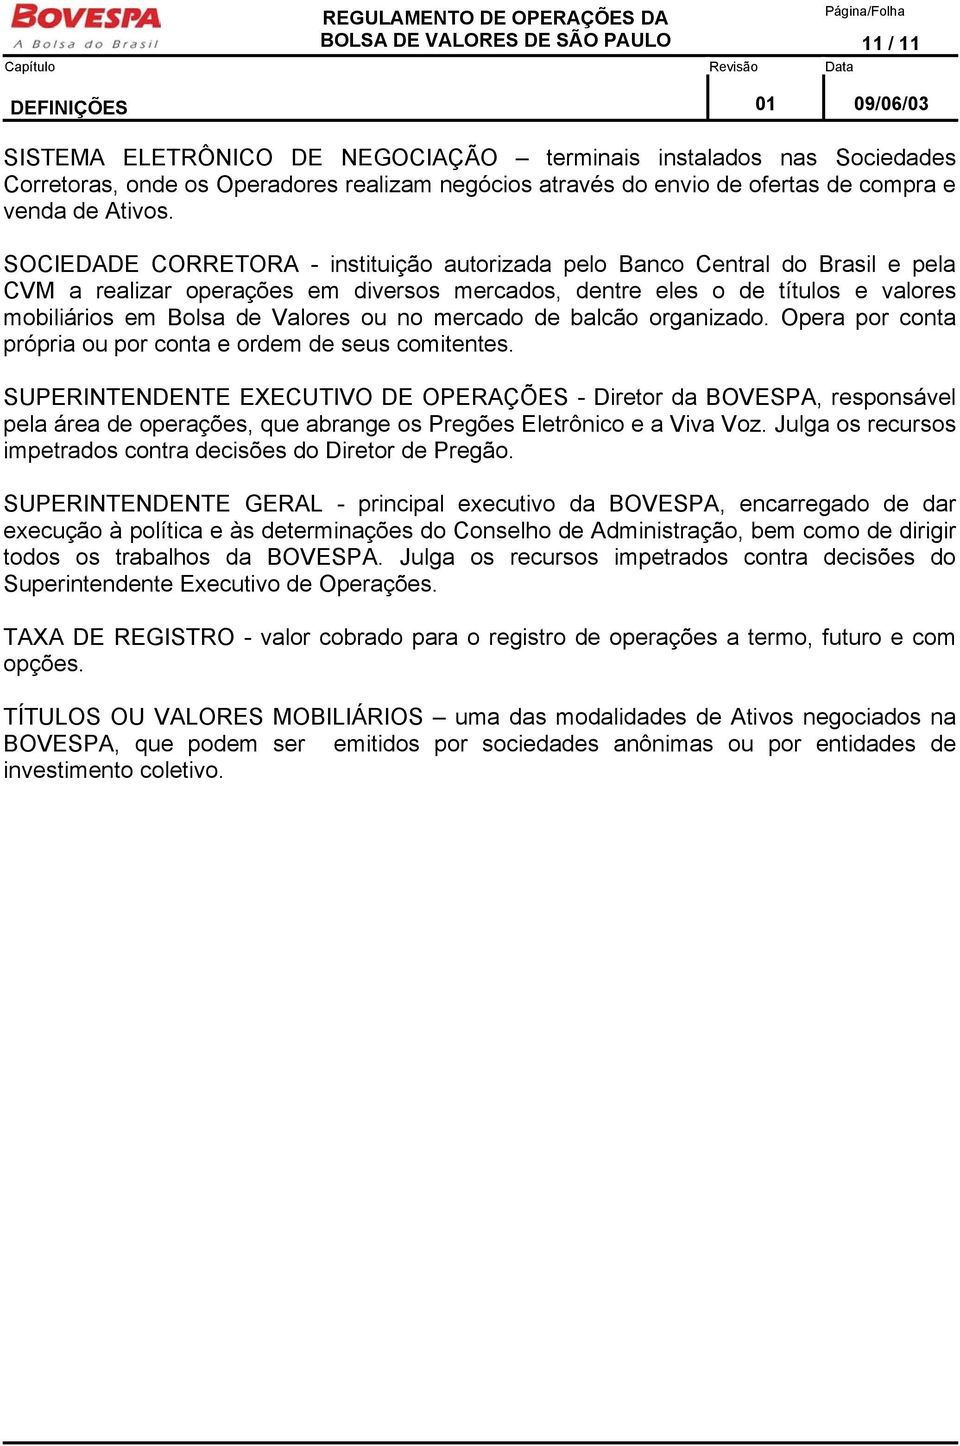 SOCIEDADE CORRETORA - instituição autorizada pelo Banco Central do Brasil e pela CVM a realizar operações em diversos mercados, dentre eles o de títulos e valores mobiliários em Bolsa de Valores ou